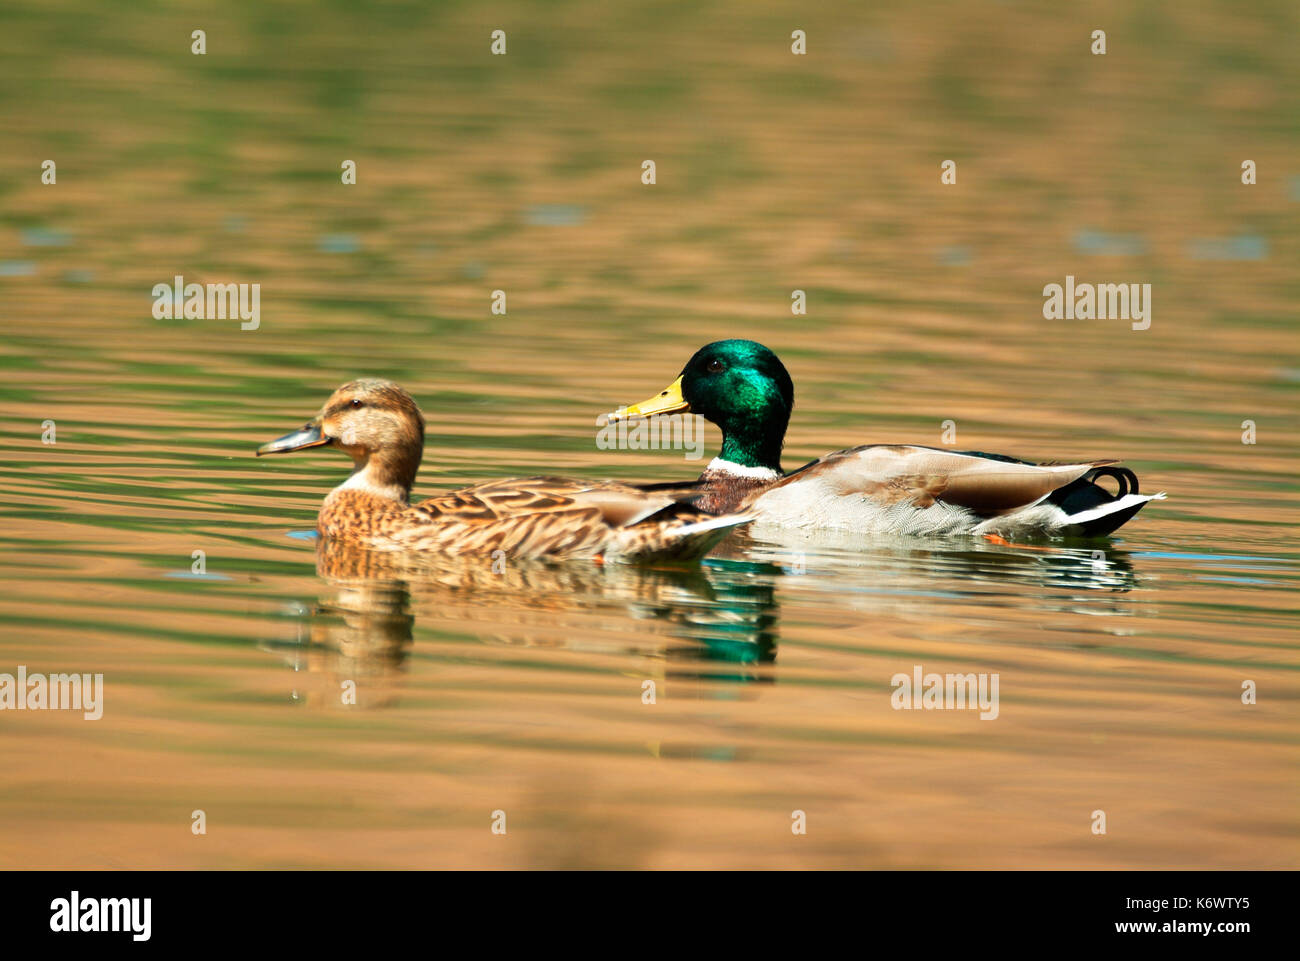 Stockente, Anas platyrhynchos, größte Dabbling Duck in jedem nassen Lebensraum gefunden, männlich in der Zucht Gefieder mit weiblichen, auf dem Wasser. Stockfoto